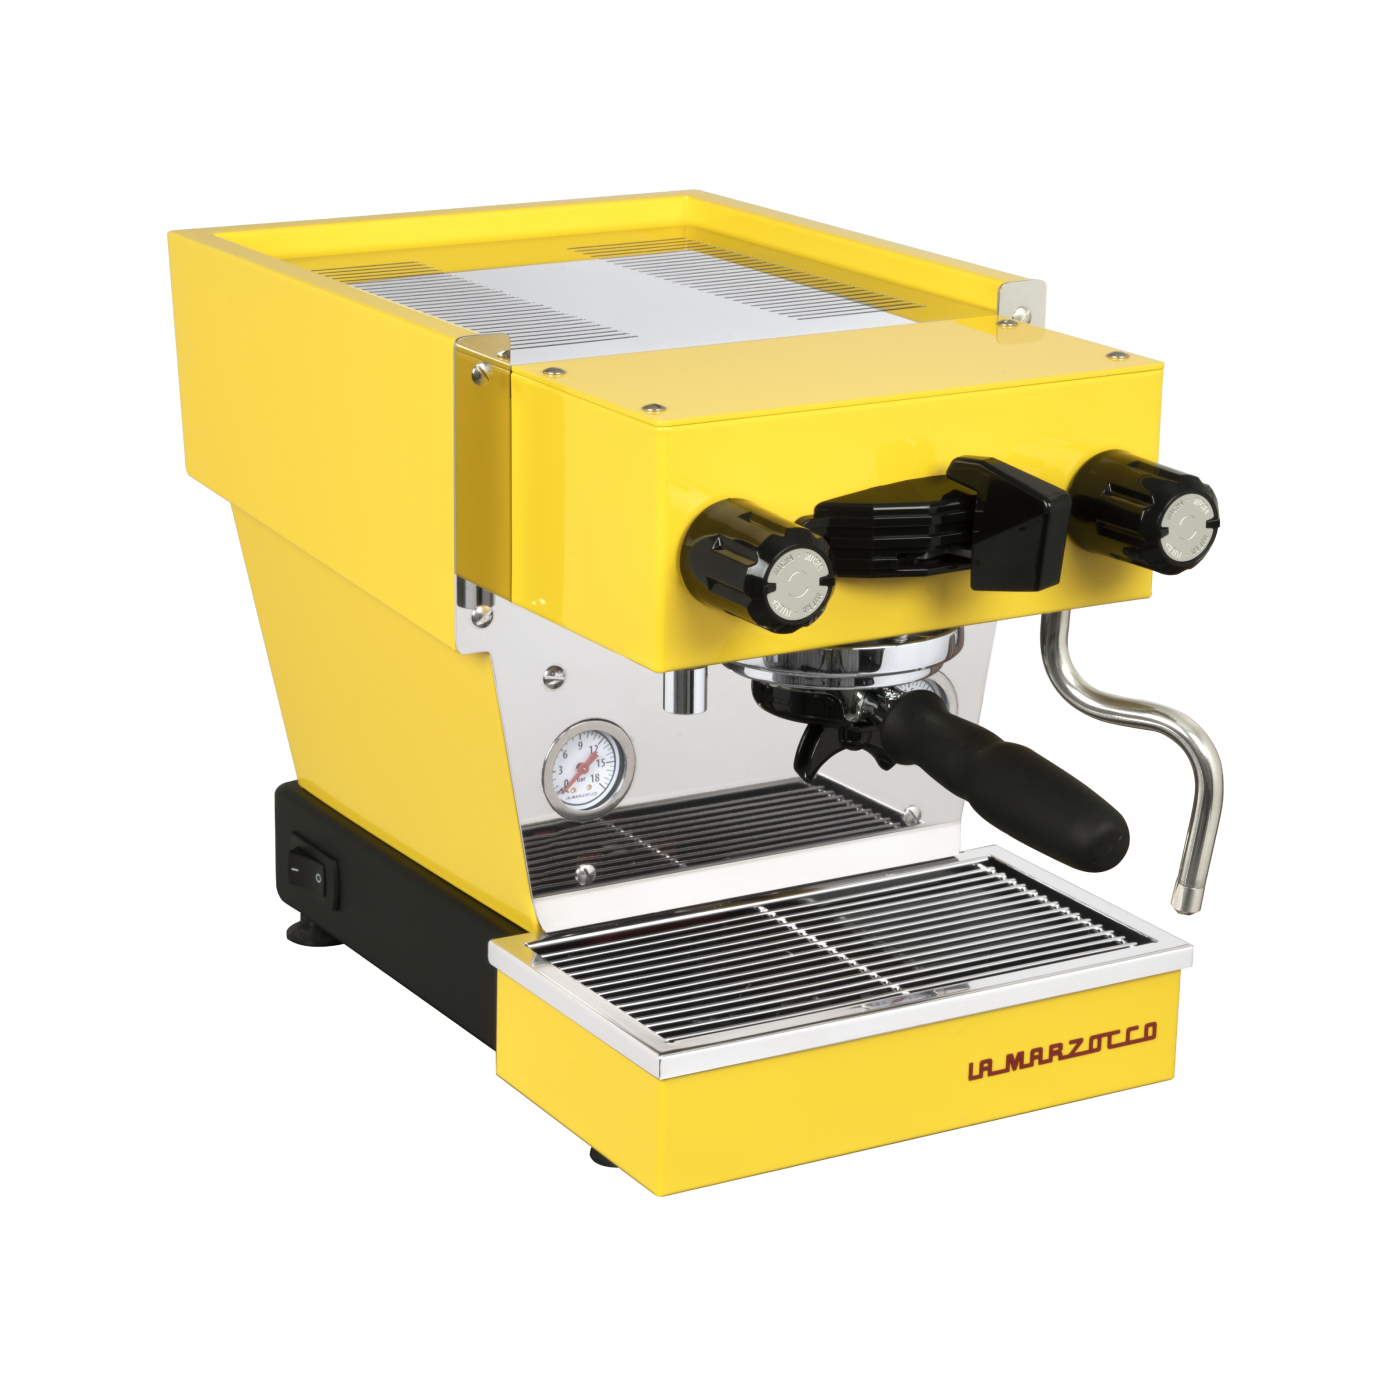 A yellow La Marzocco espresso machine against a black background